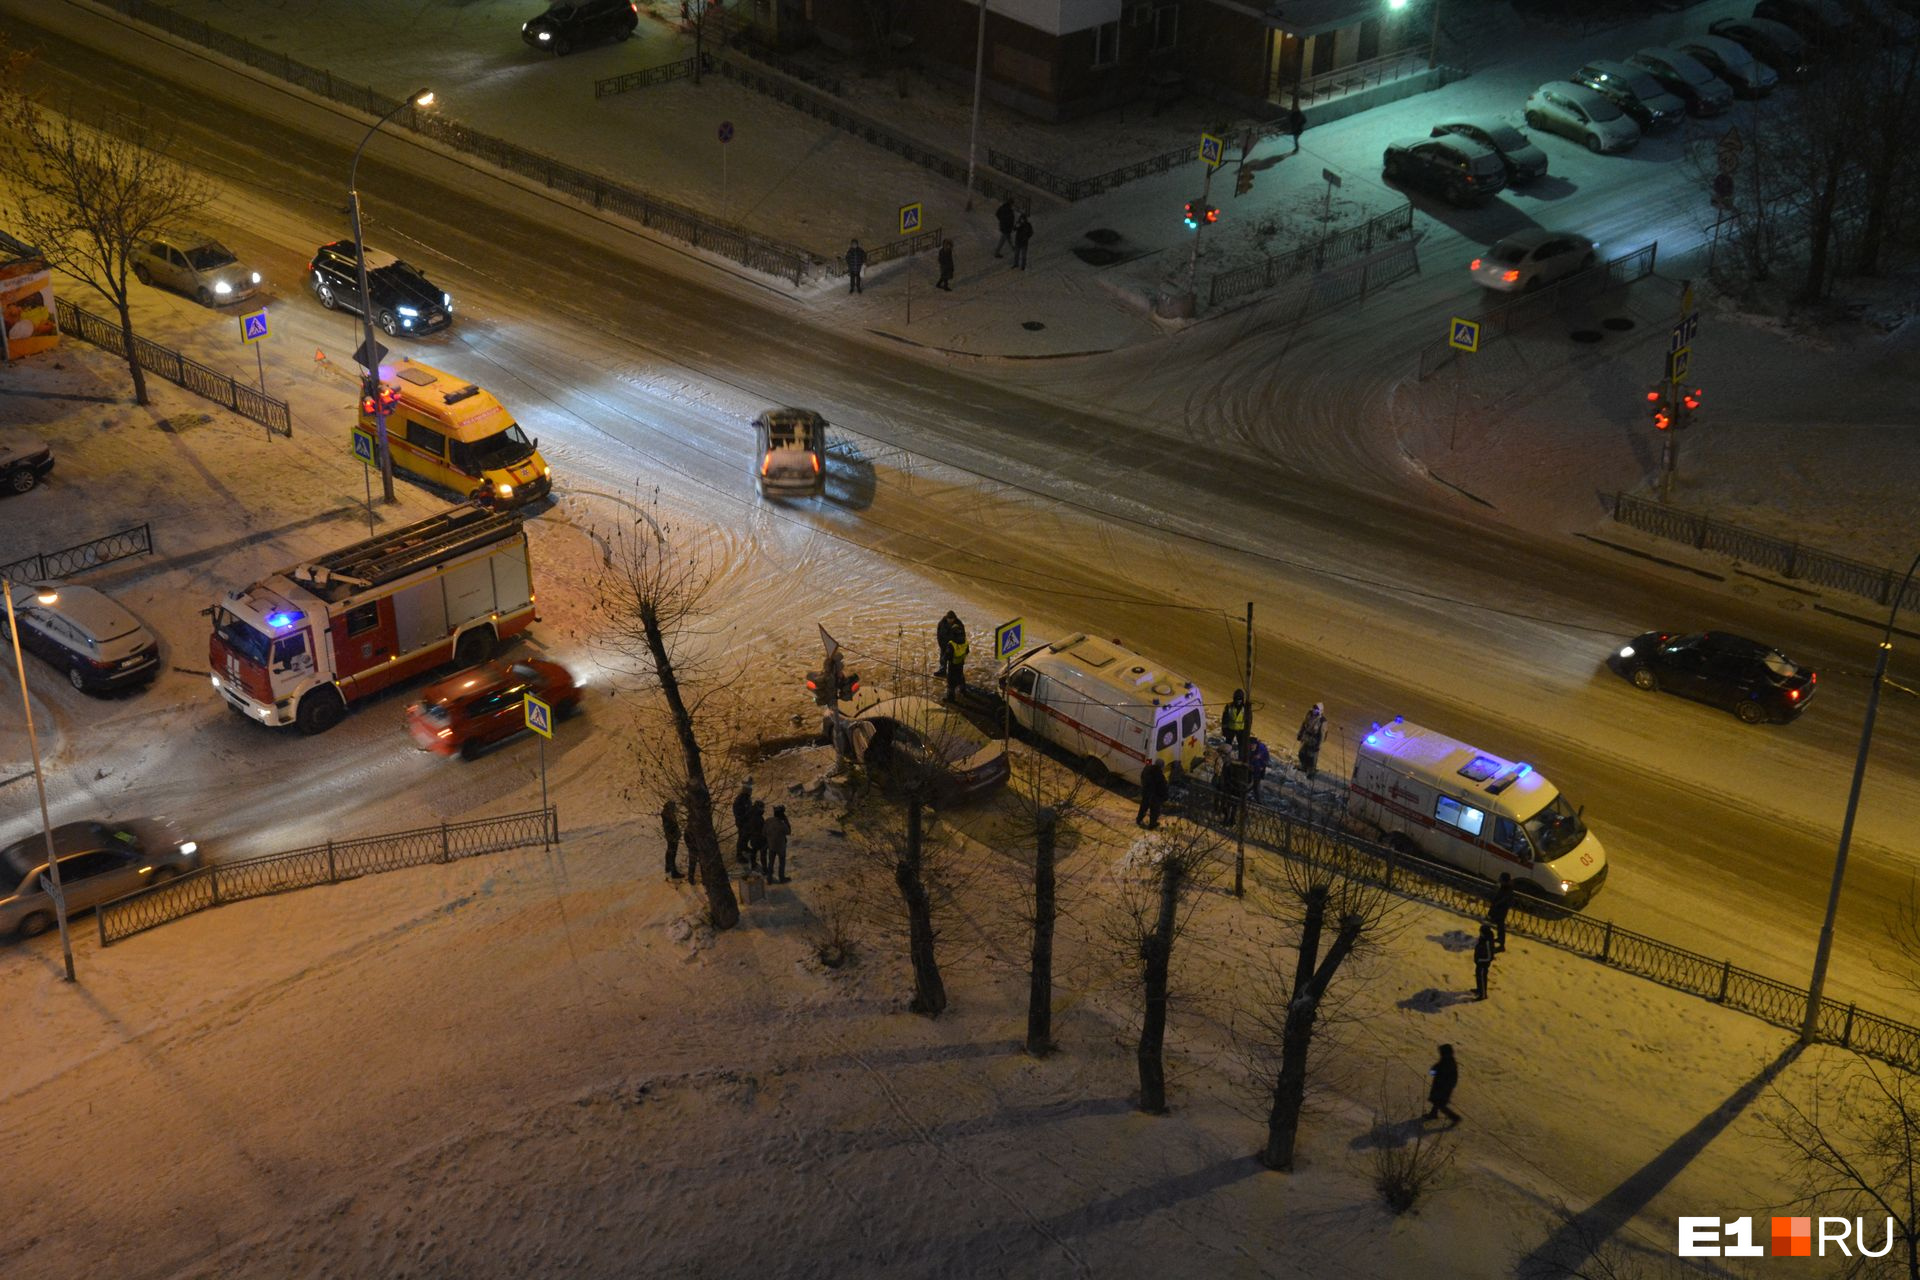 Что случилось в екб. Авария в Екатеринбурге со скорой помощью. Что происходит в Екатеринбурге. Что произошло в Екатеринбурге вчера вечером.